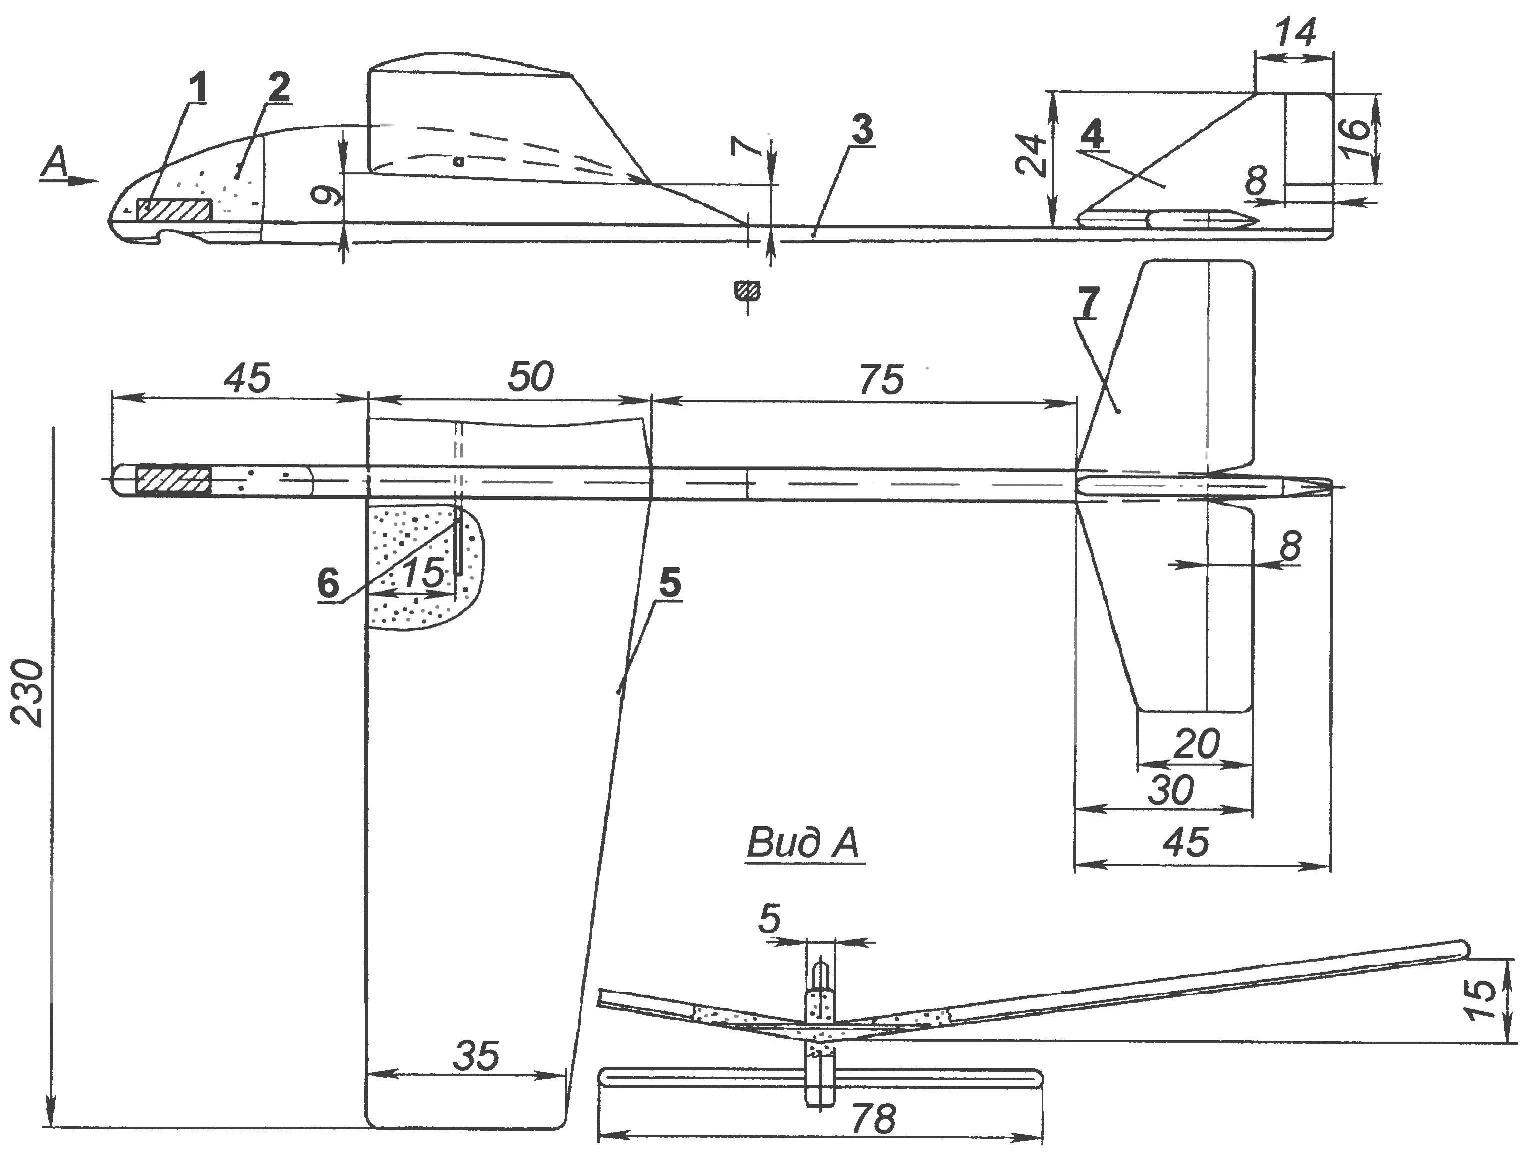 Рис. 2. Модель планера для запуска с руки и с использованием катапульты